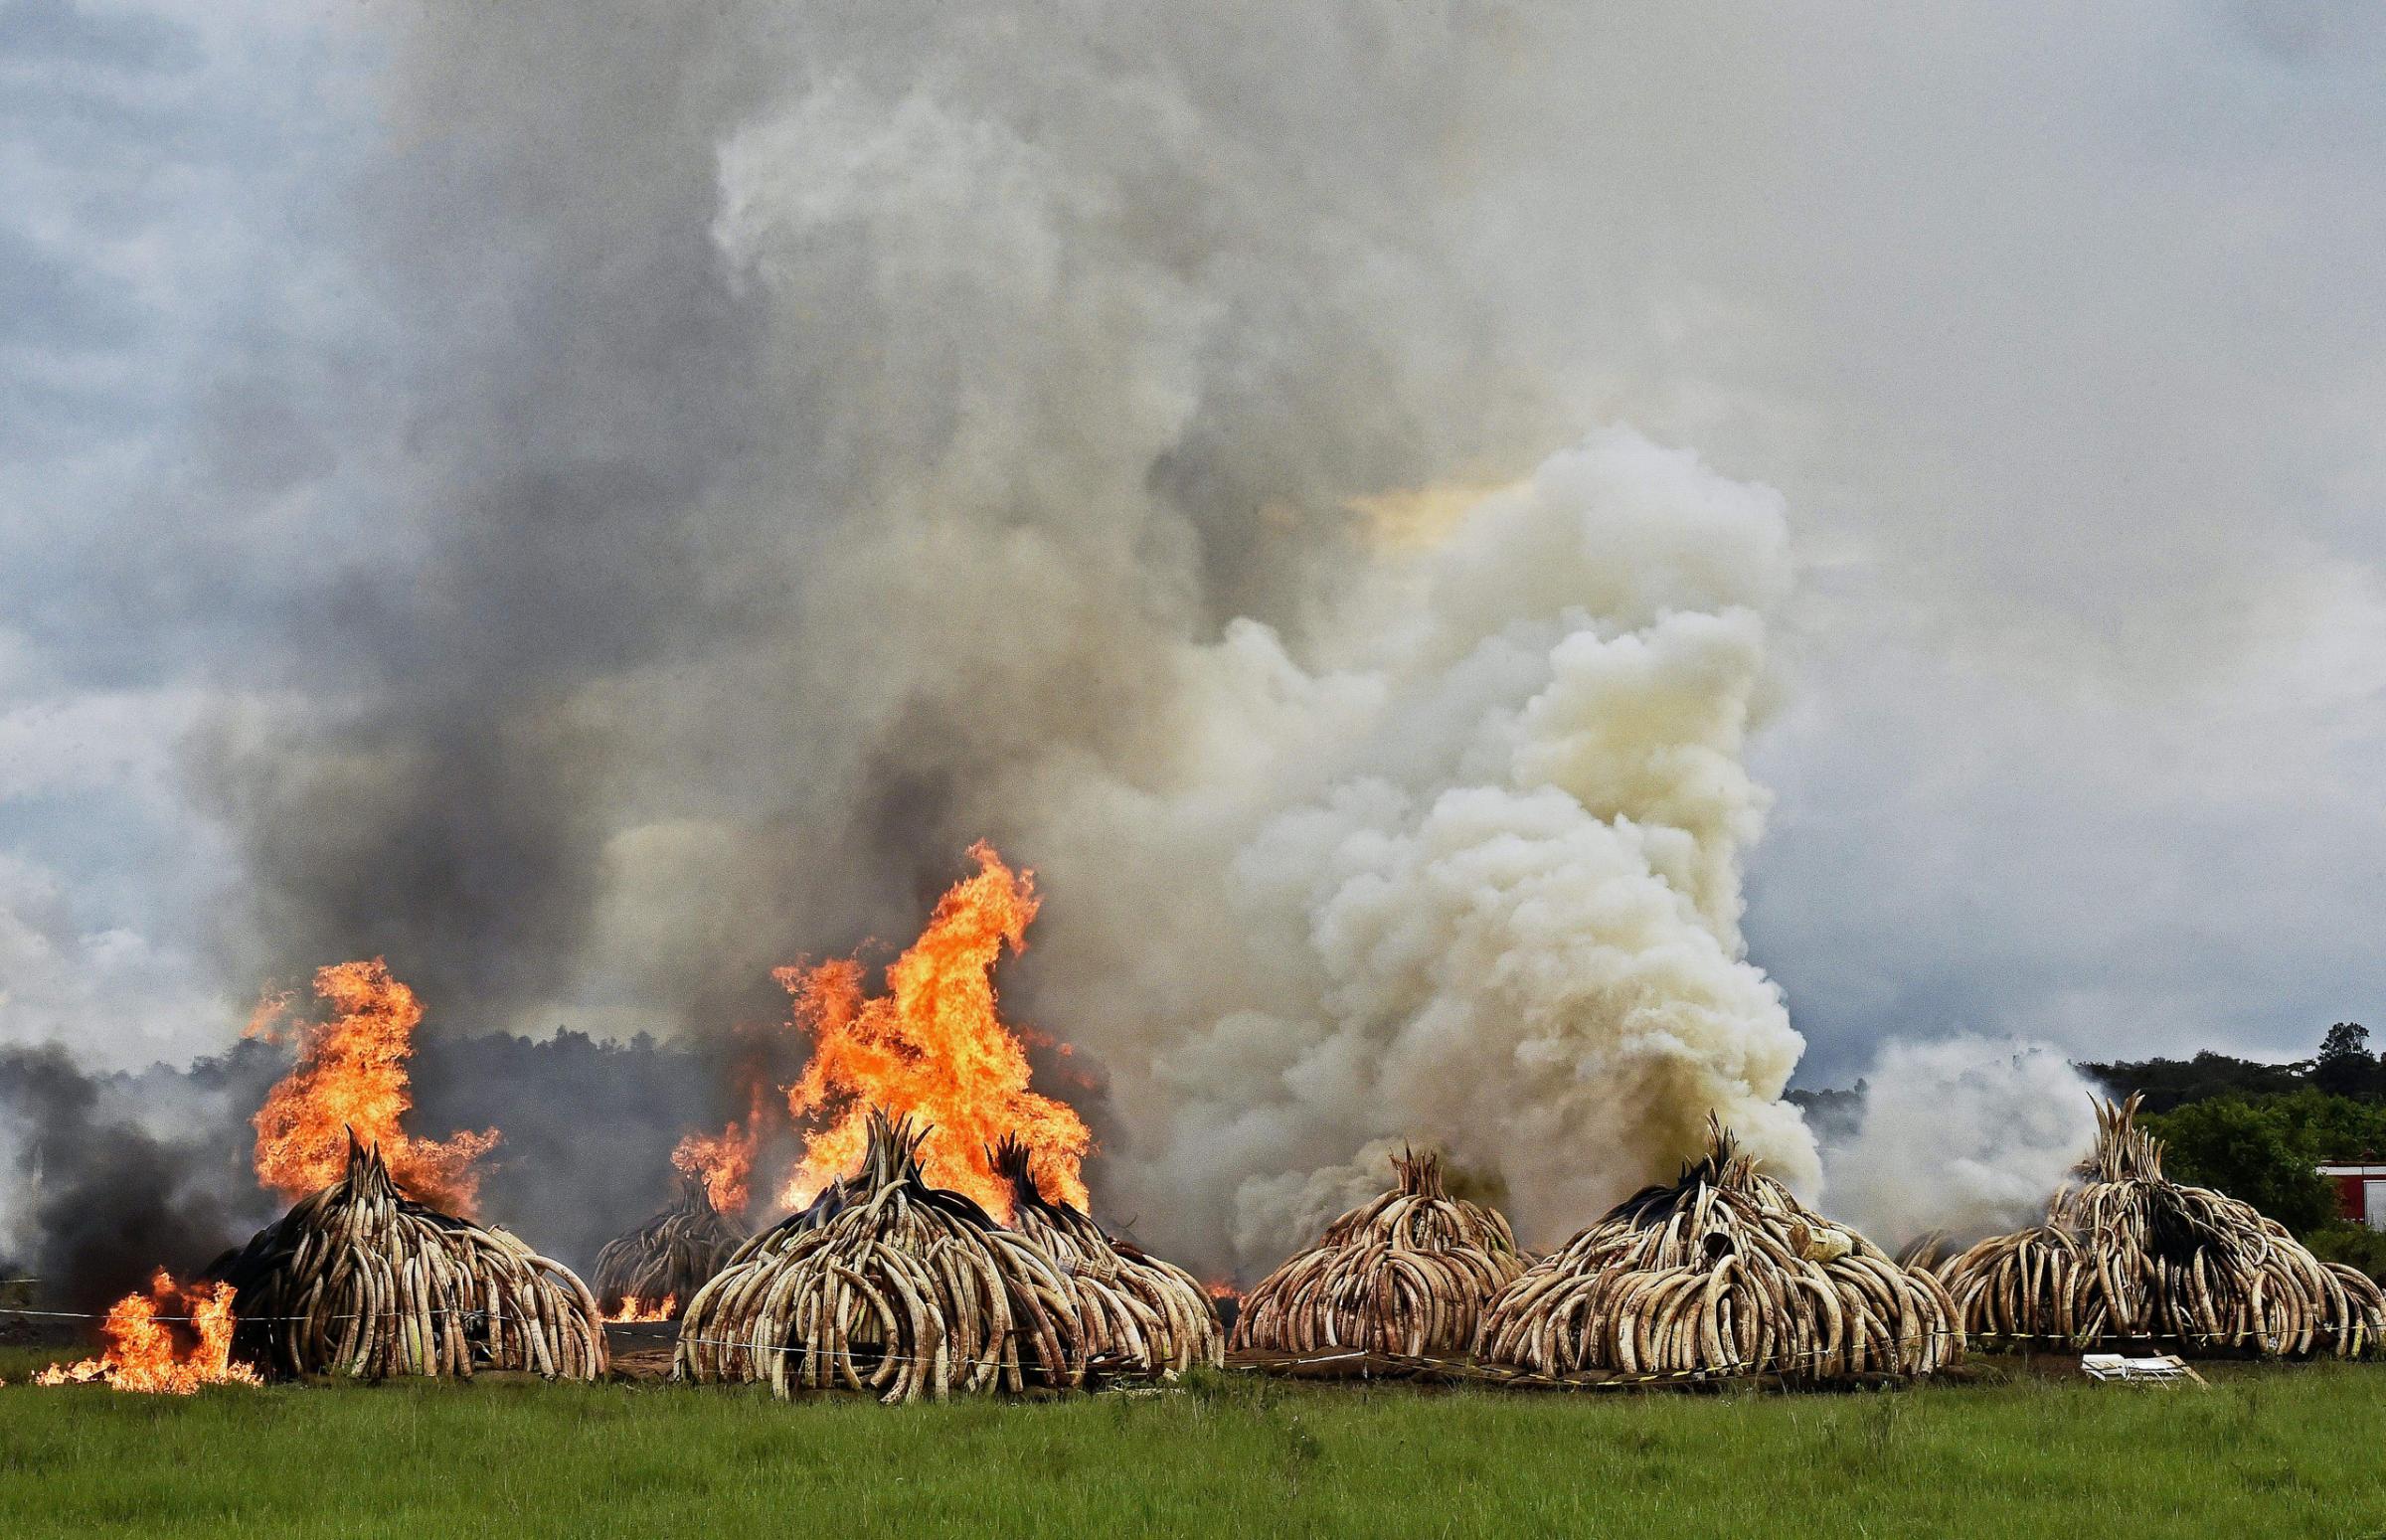 KENYA-IVORY-WILDLIFE-FIRE